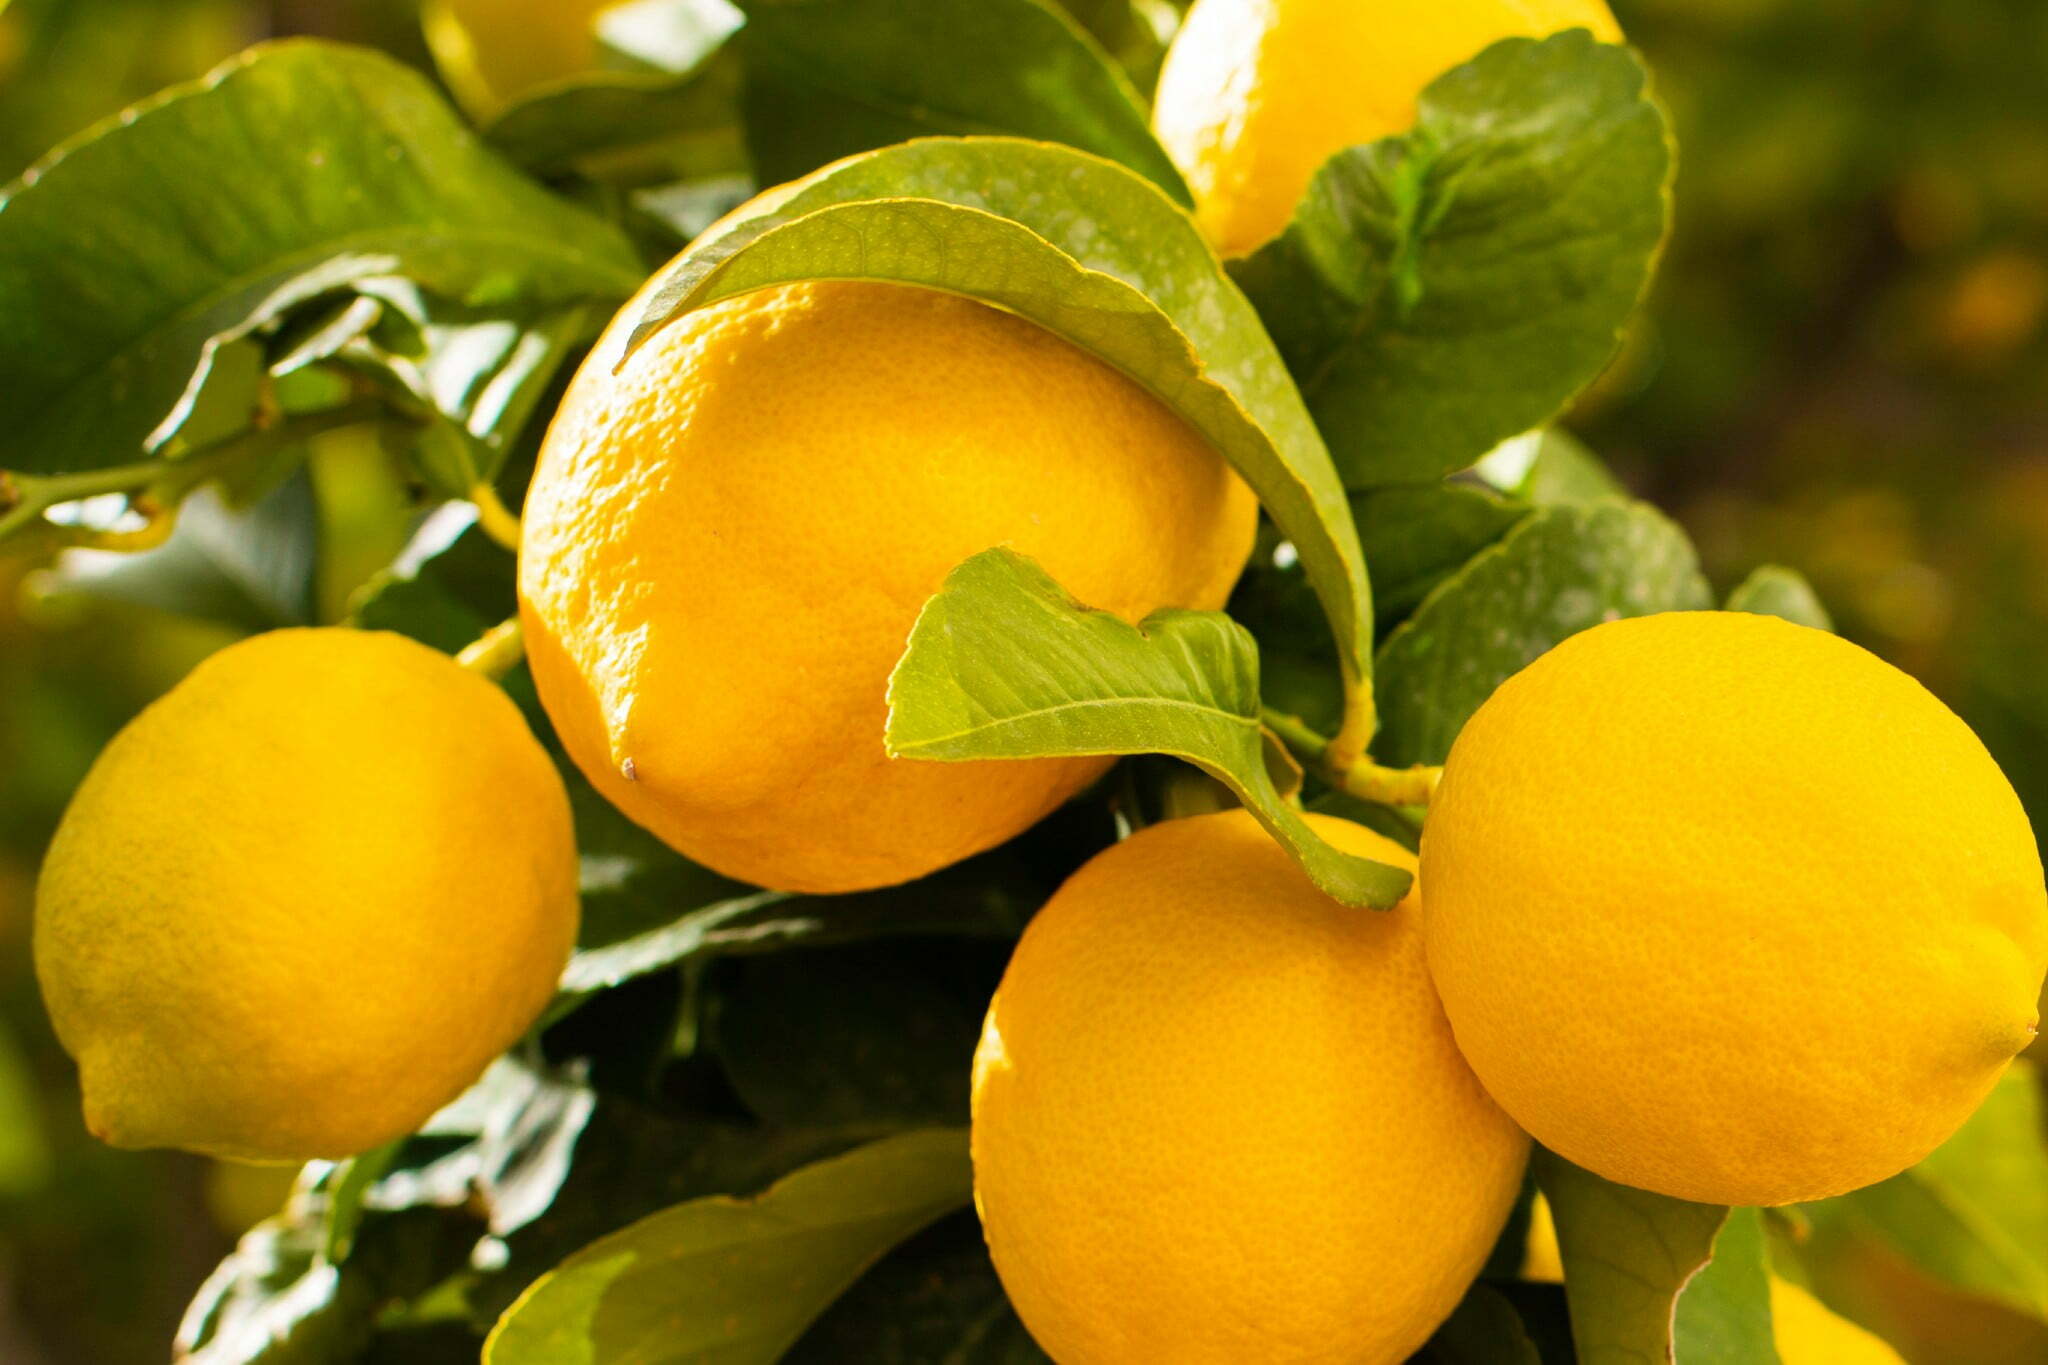 Foglie di limone in cucina: quando e come utilizzarle